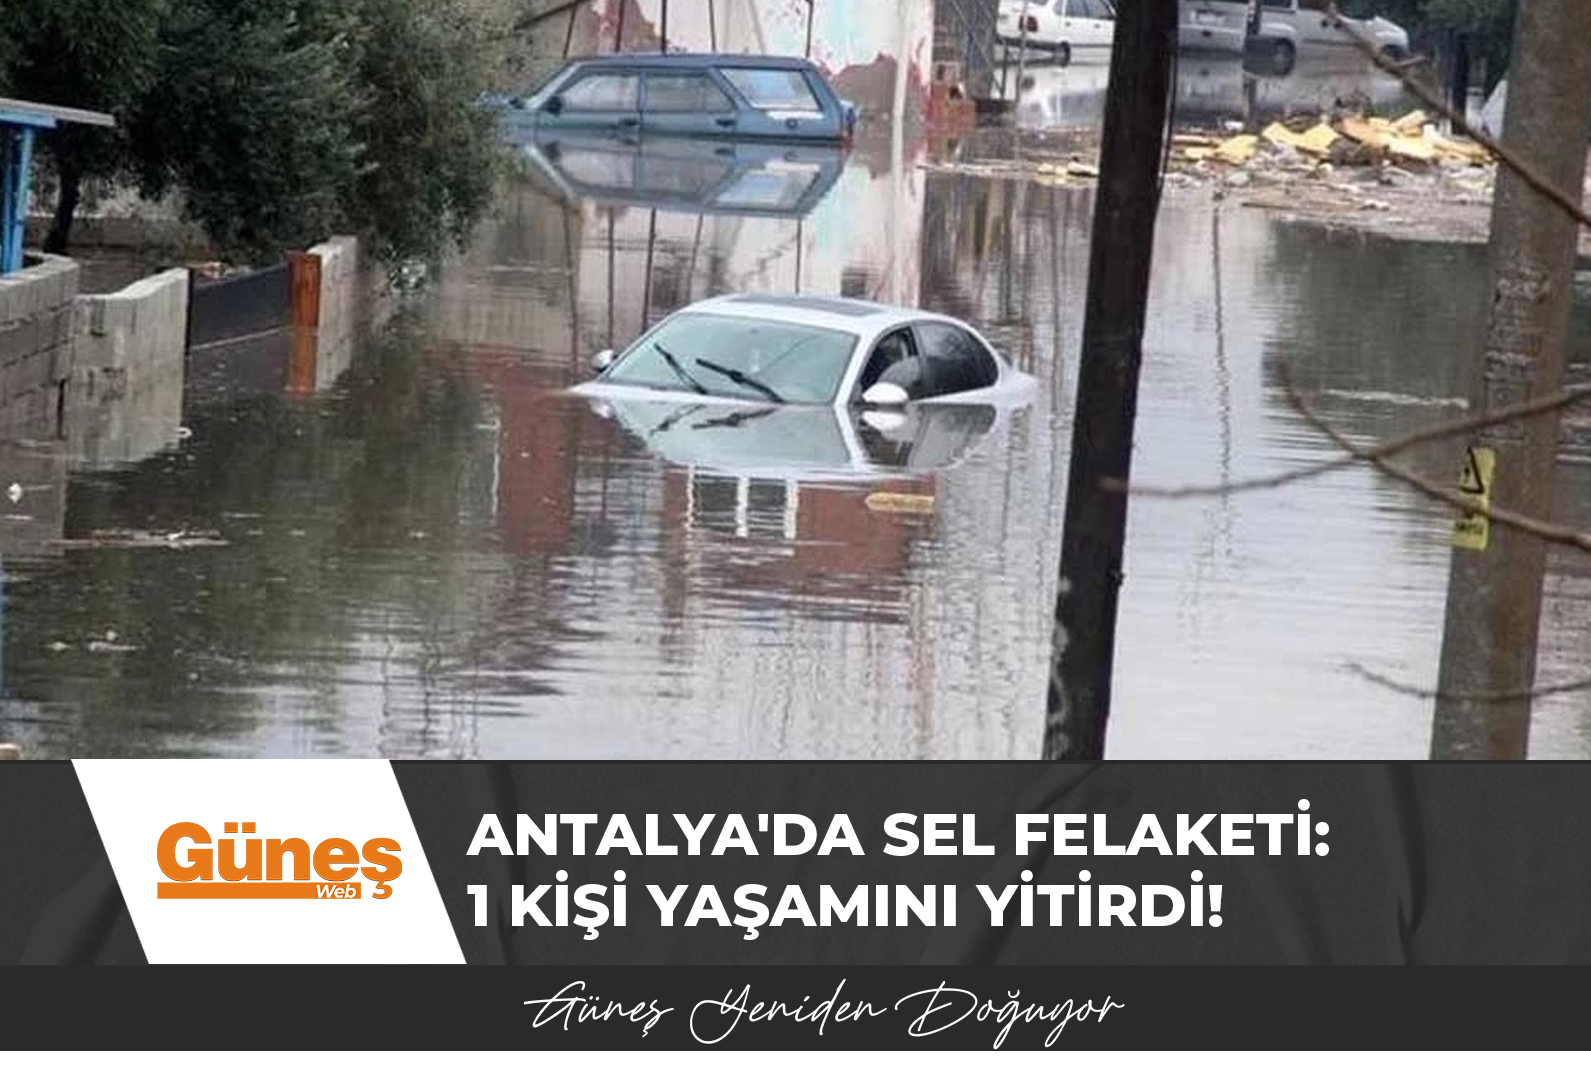 Antalya’da sel felaketi: 1 kişi yaşamını yitirdi!